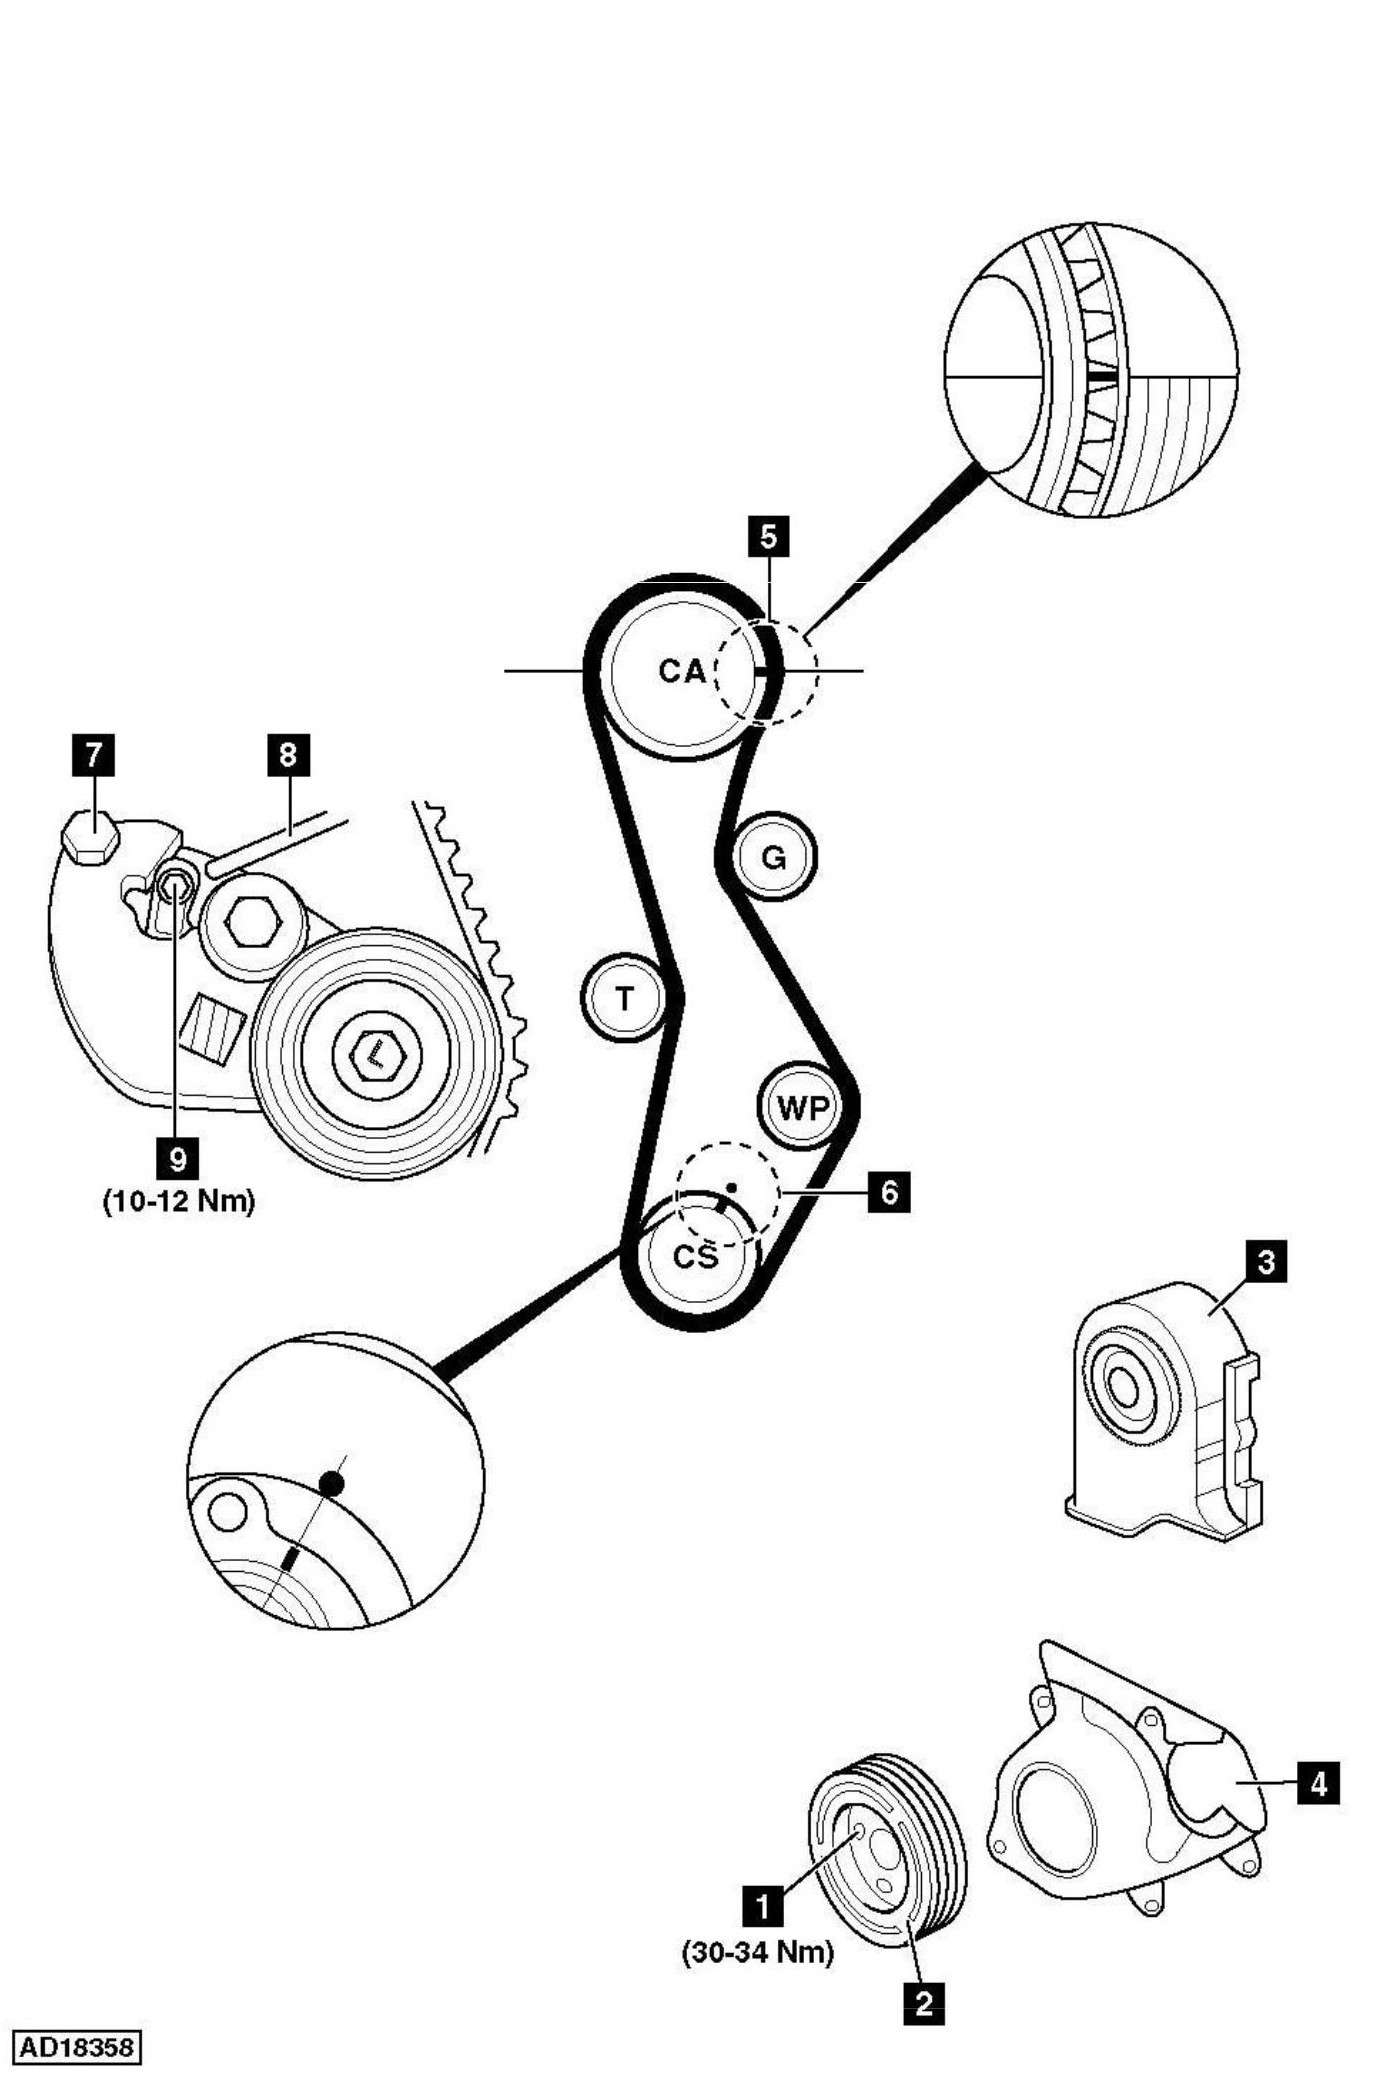 Engine Timing Diagram How to Replace Timing Belt Hyundai Santa Fe 2 0d Crdi 2002 Of Engine Timing Diagram